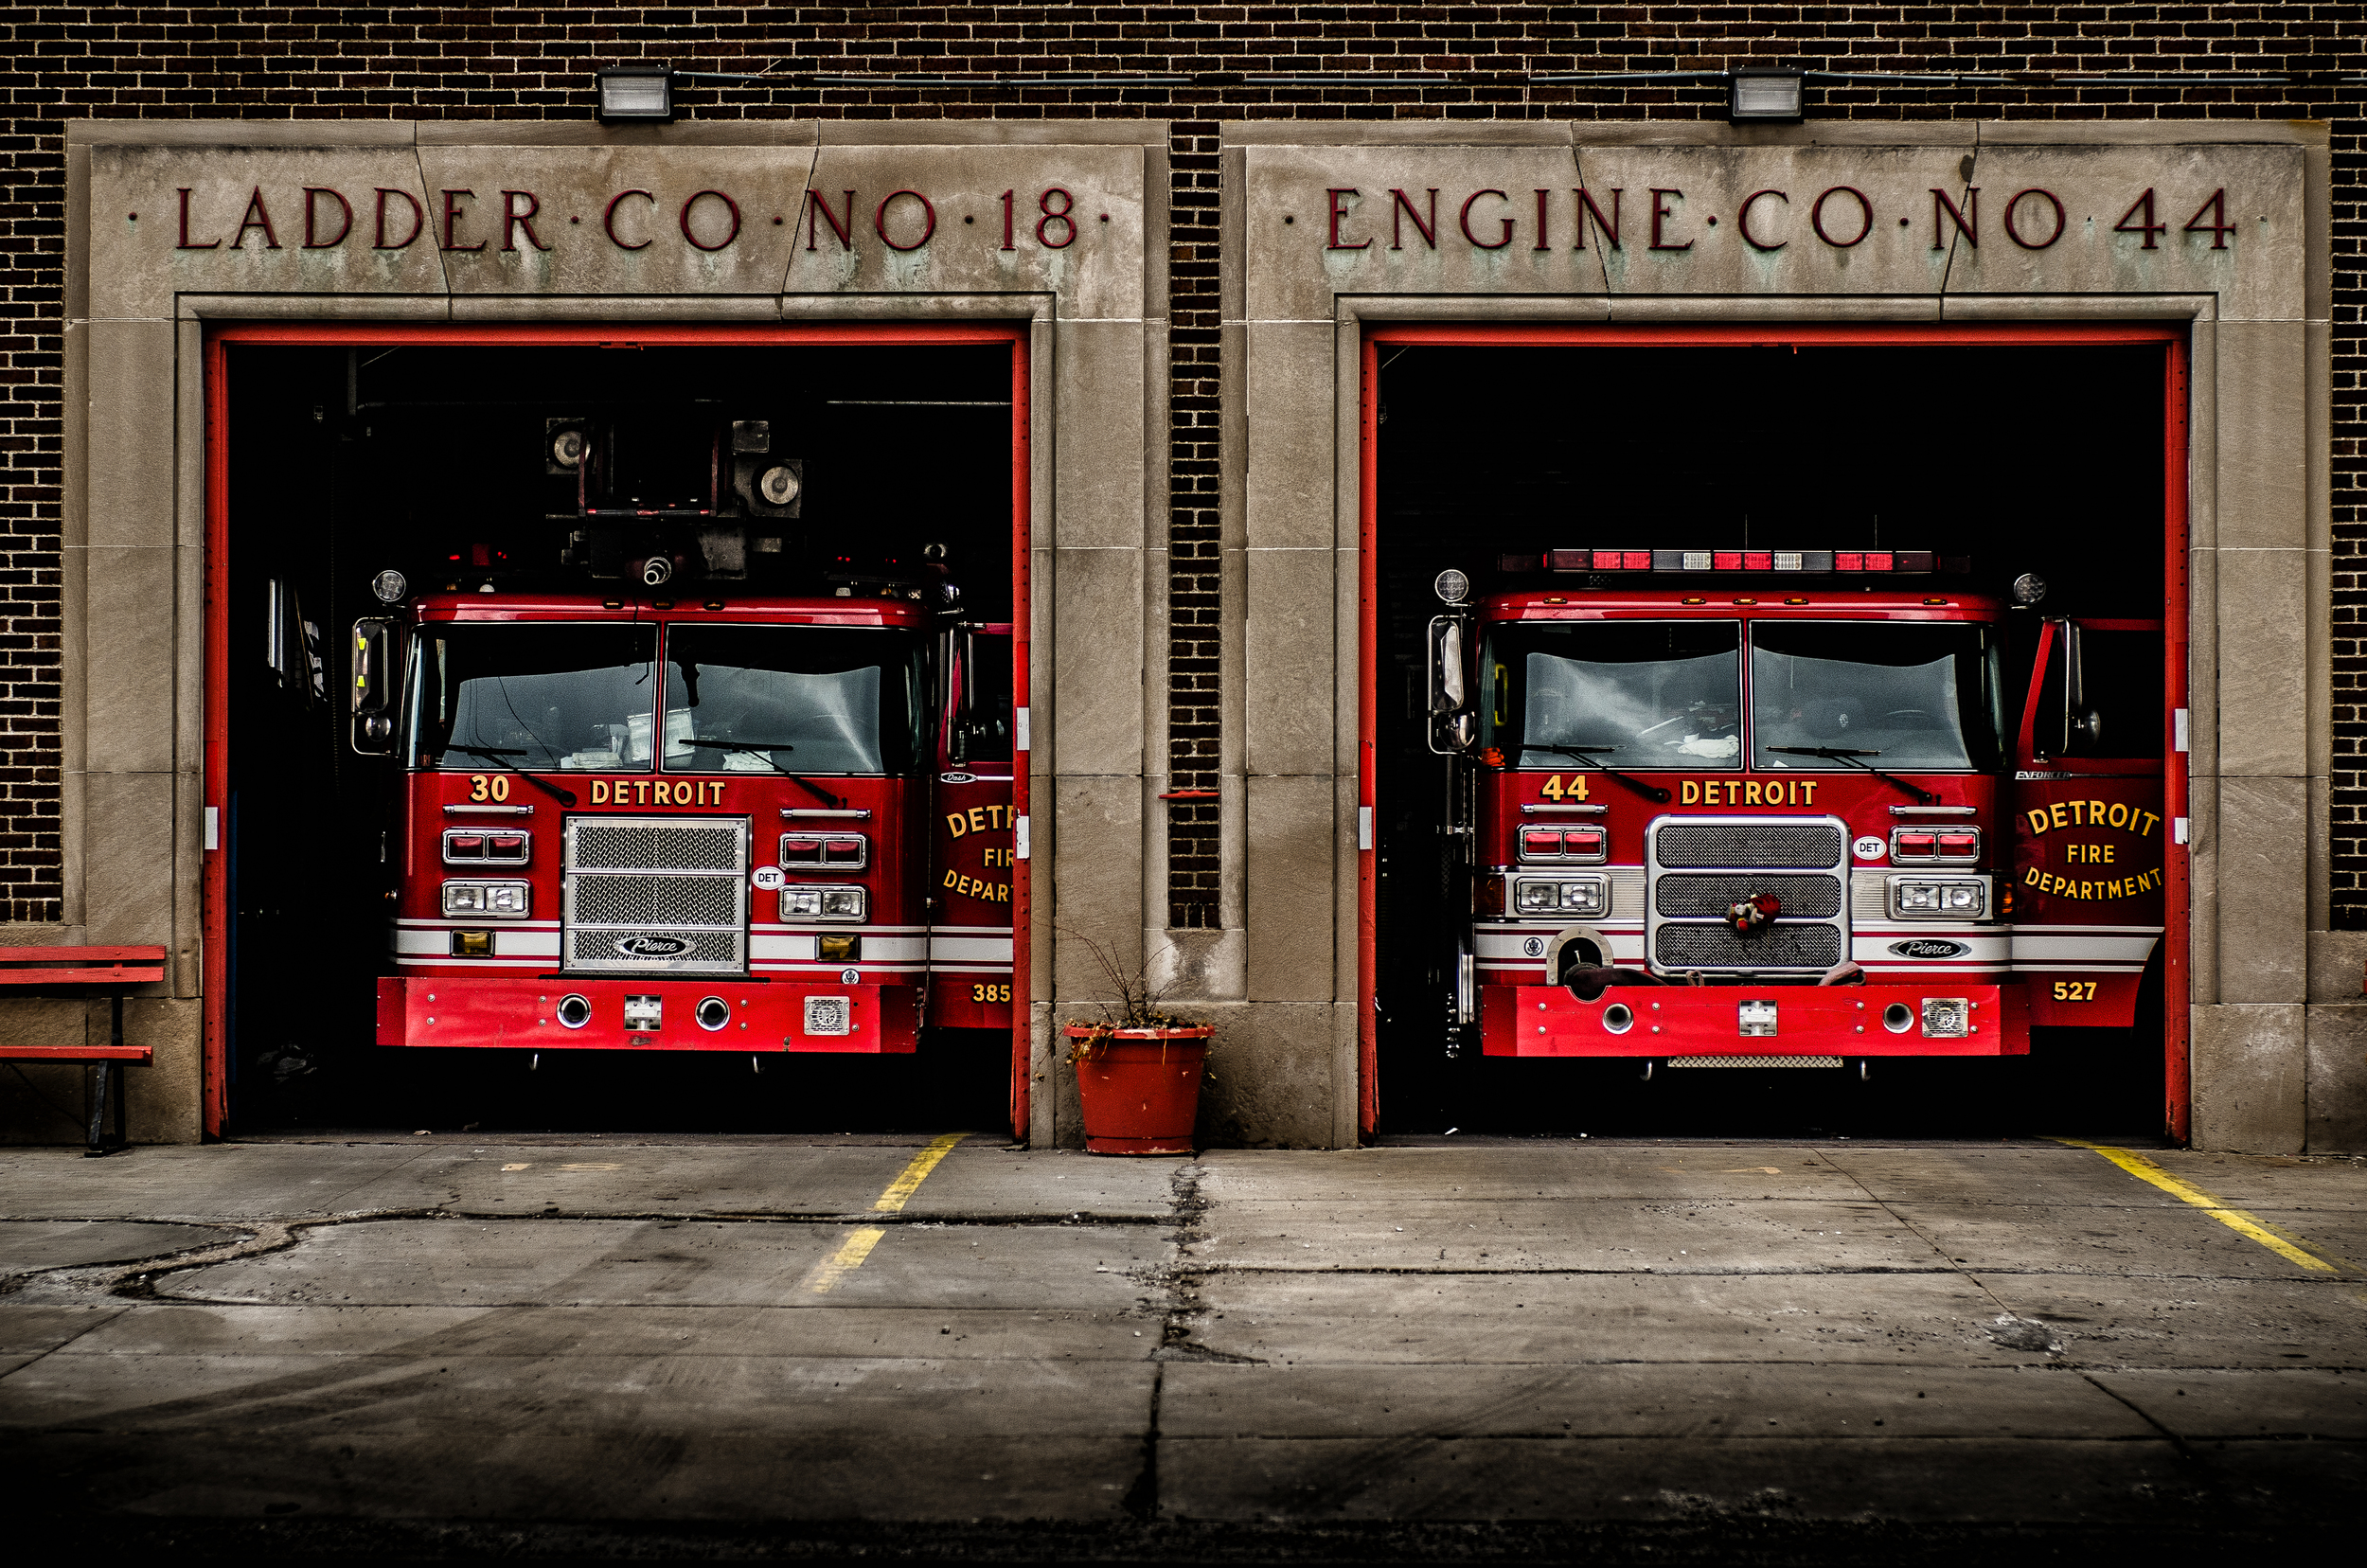 Detroit Firehouse Ladder Co